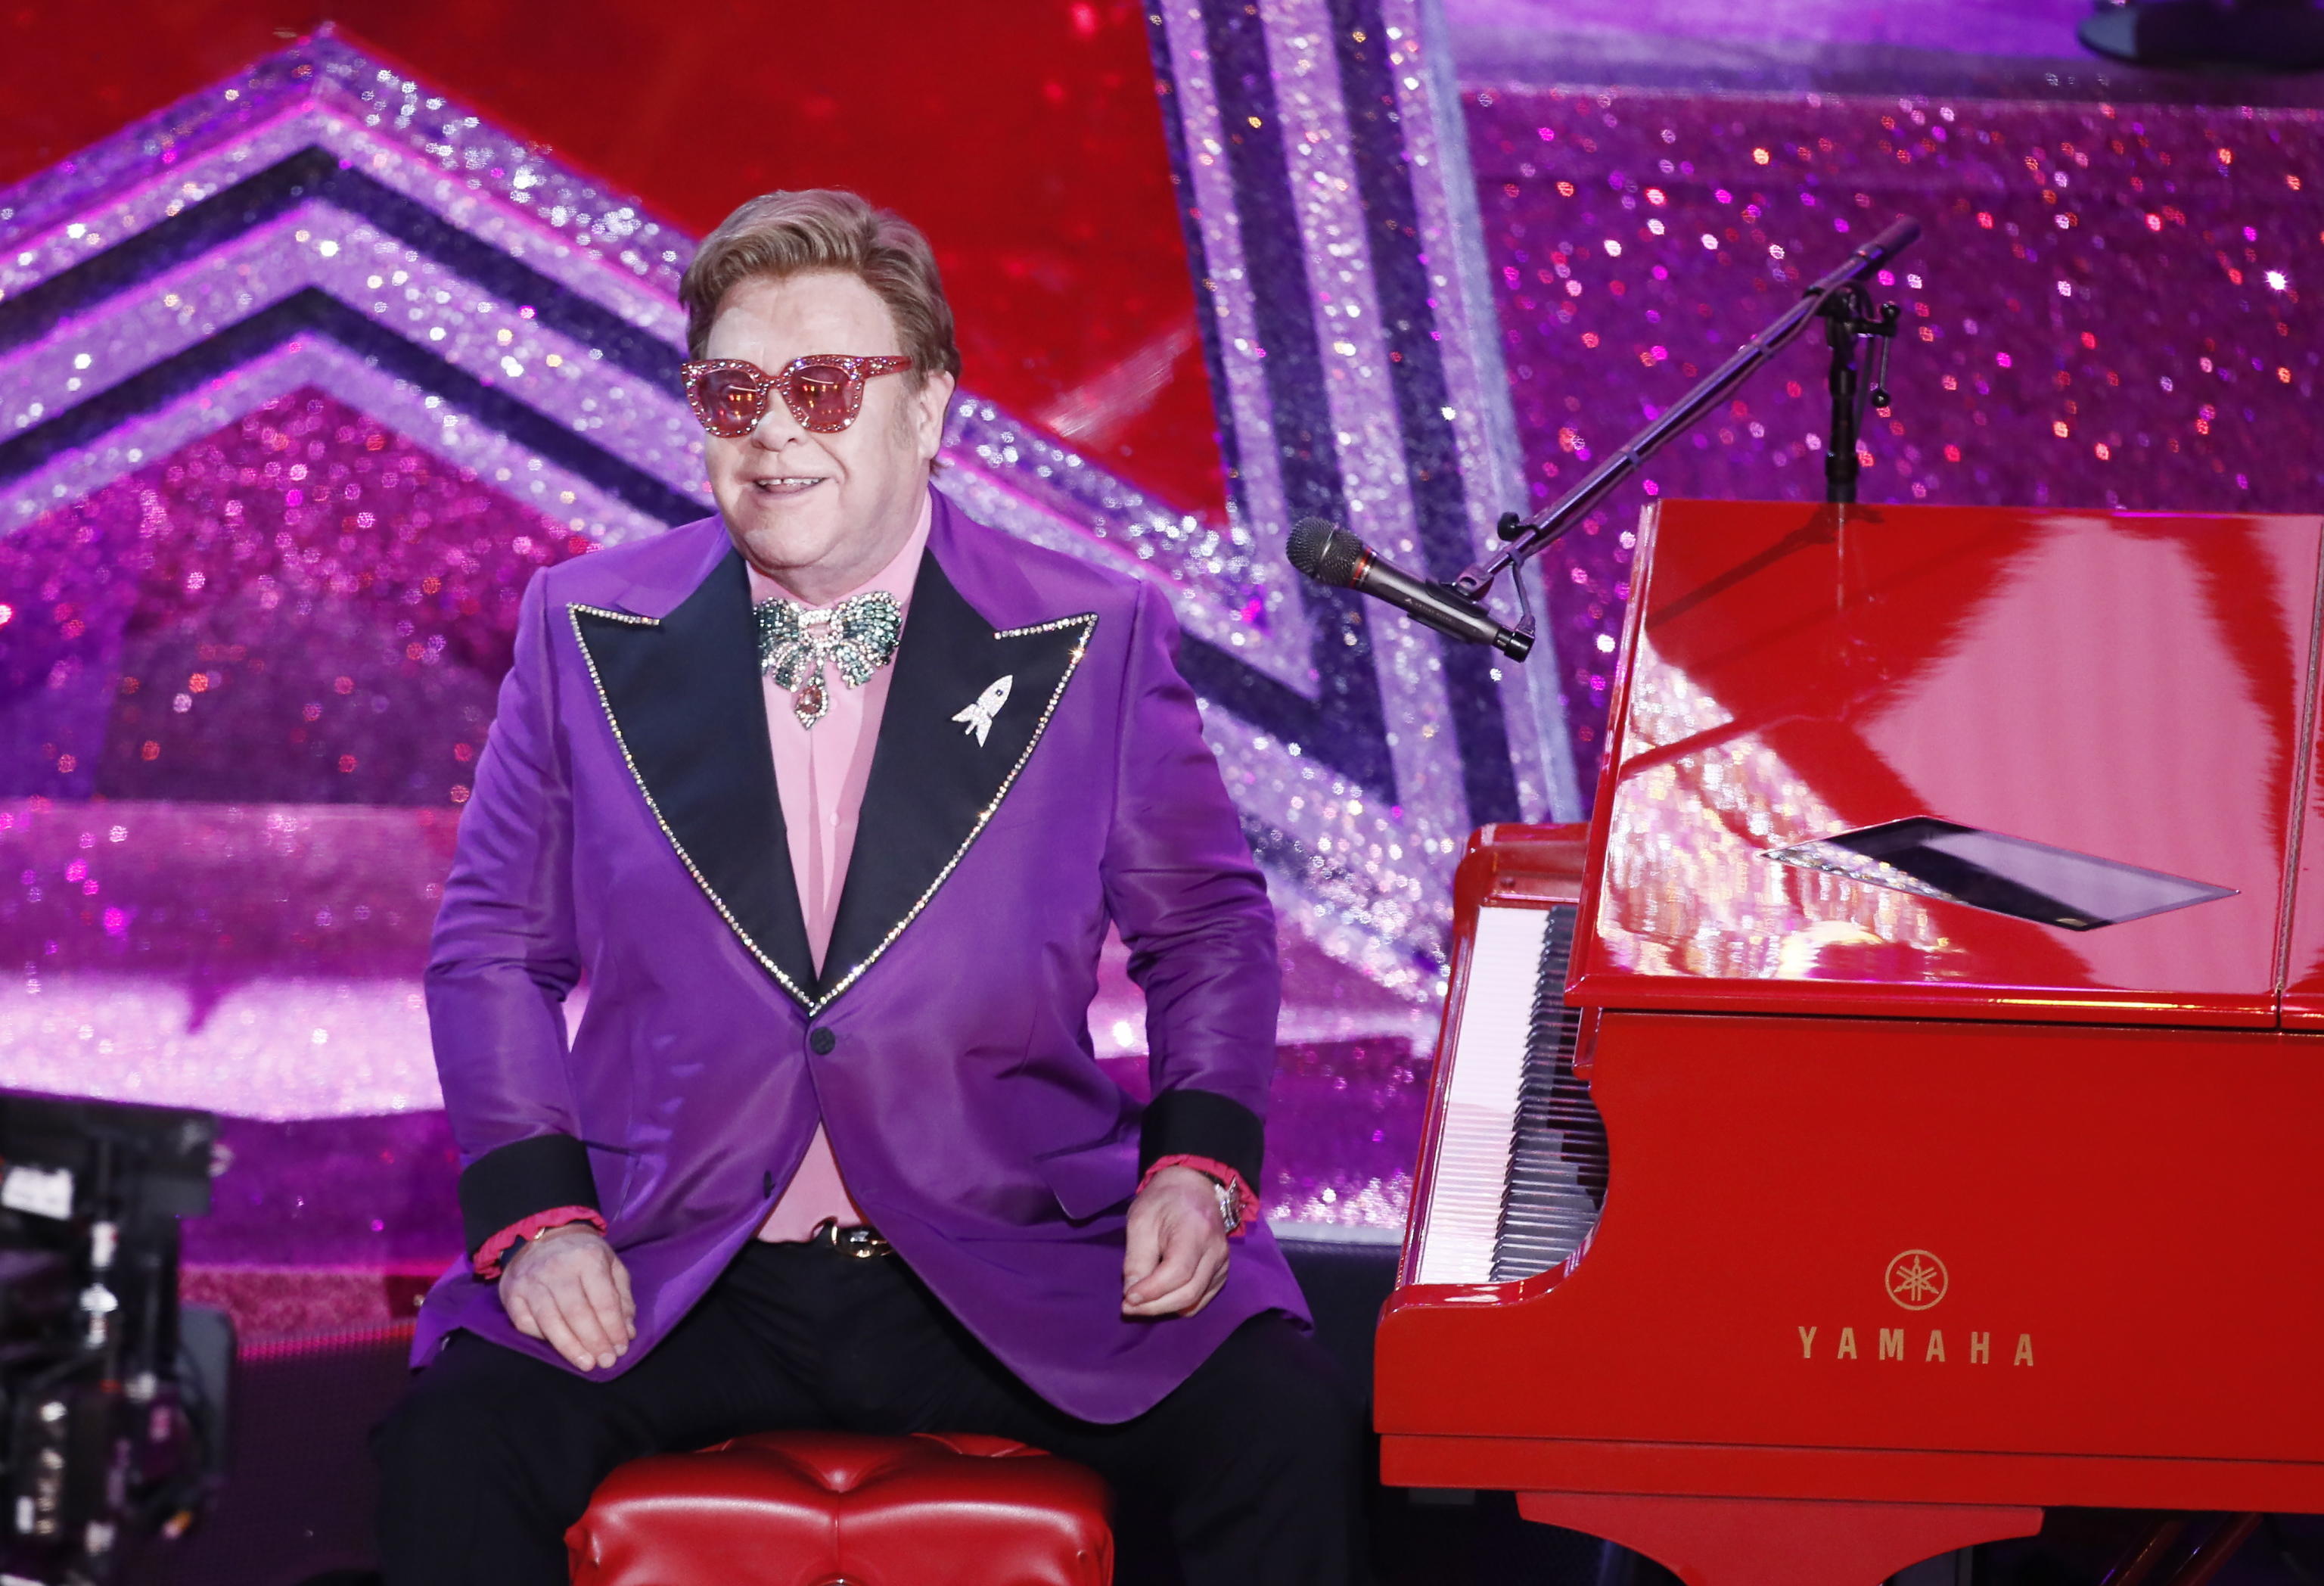 Durante la cerimonia dei 92esimi Academy Awards si fa notare anche il cantante Elton John, che ha vinto l’Oscar per la migliore canzone per il film Rocketman